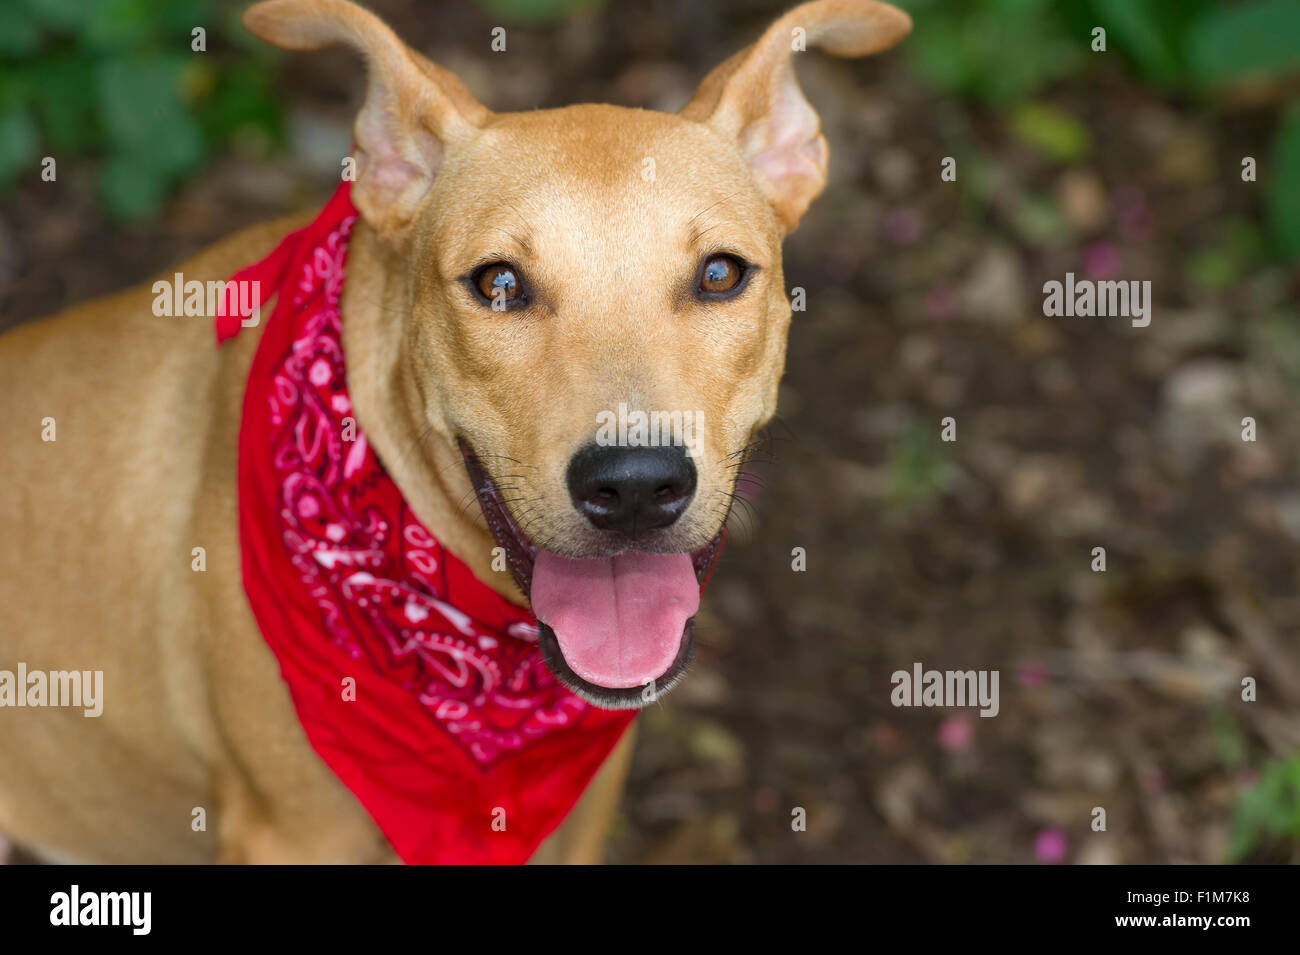 Glücklich ist ein großer Hund Closeup glücklicher Hund mit seinem Mund und ein rotes Halstuch öffnen Sie lächelnd in die Kamera. Stockfoto